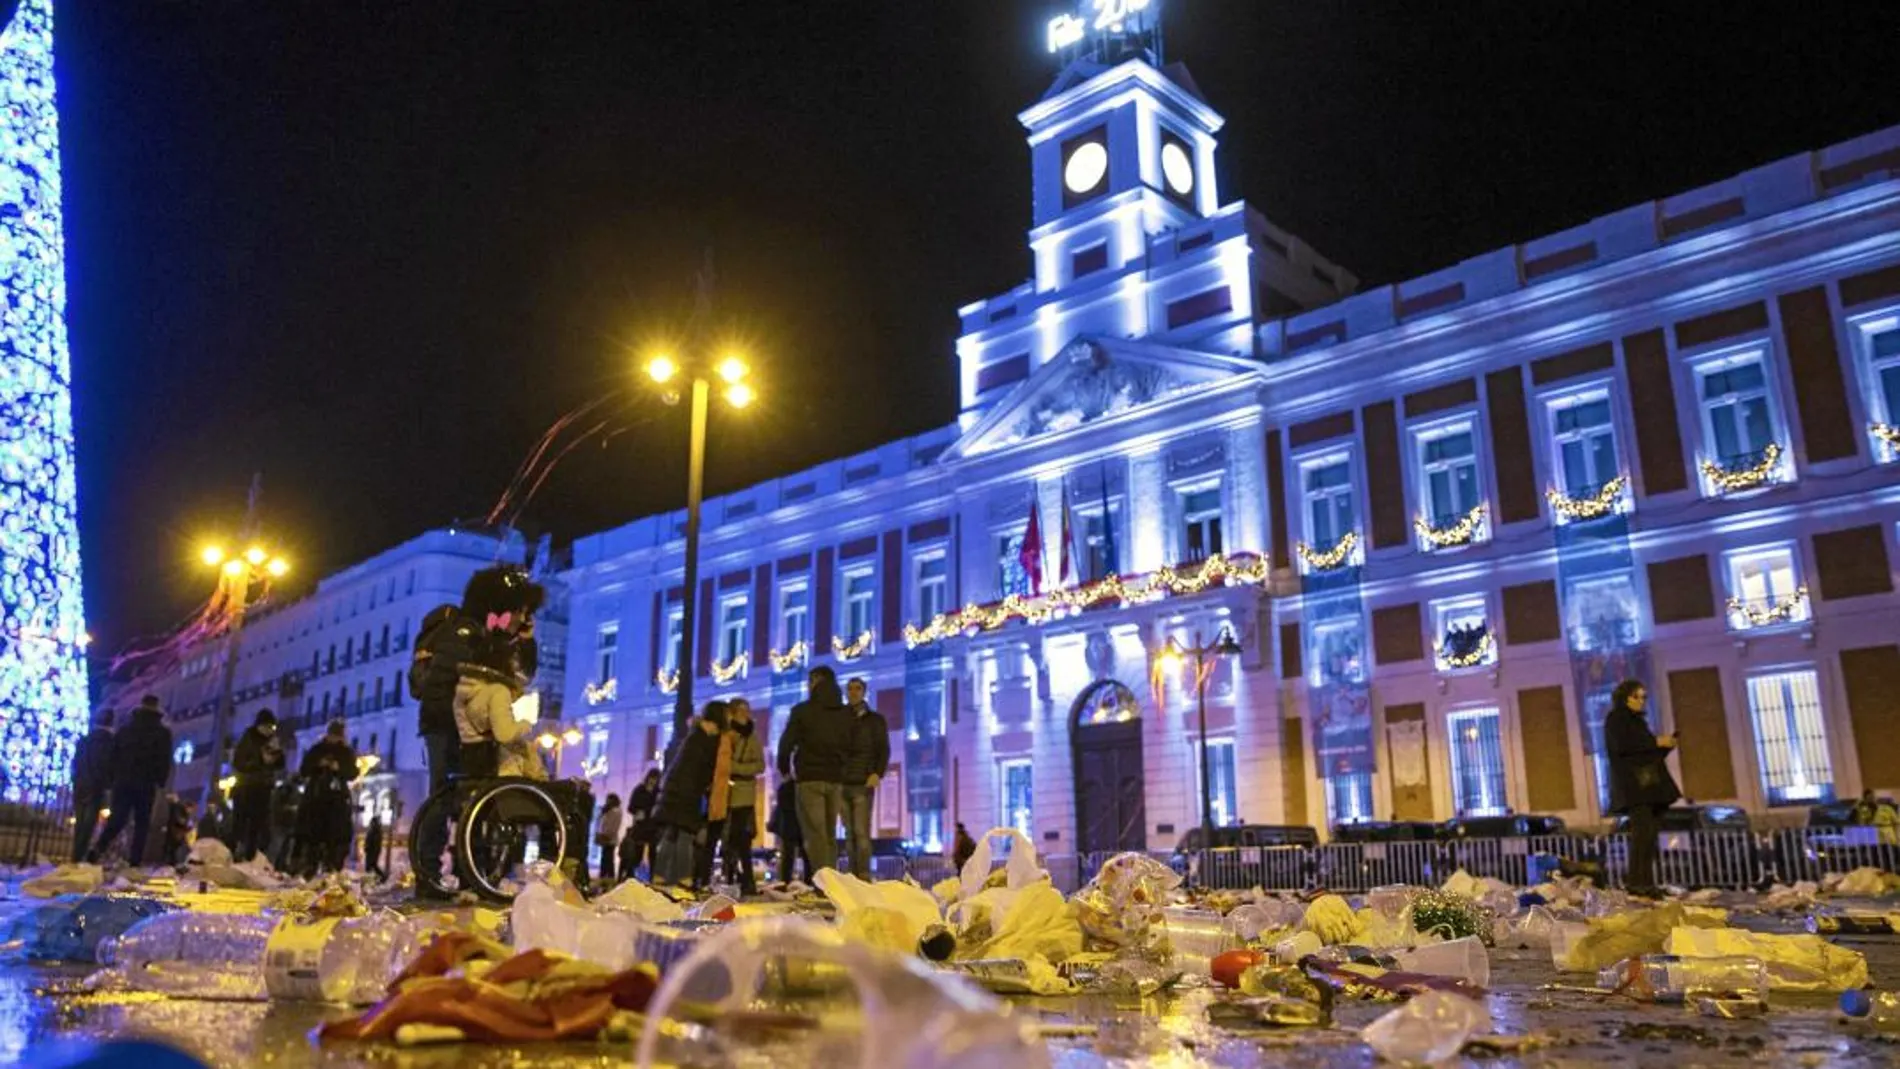 Operarios de limpieza del Ayuntamiento de Madrid recogen la basura acumulada tras al celebración de las campanadas de Año Nuevo que concentró a miles de personas en la popular plaza madrileña de la Puerta del Sol